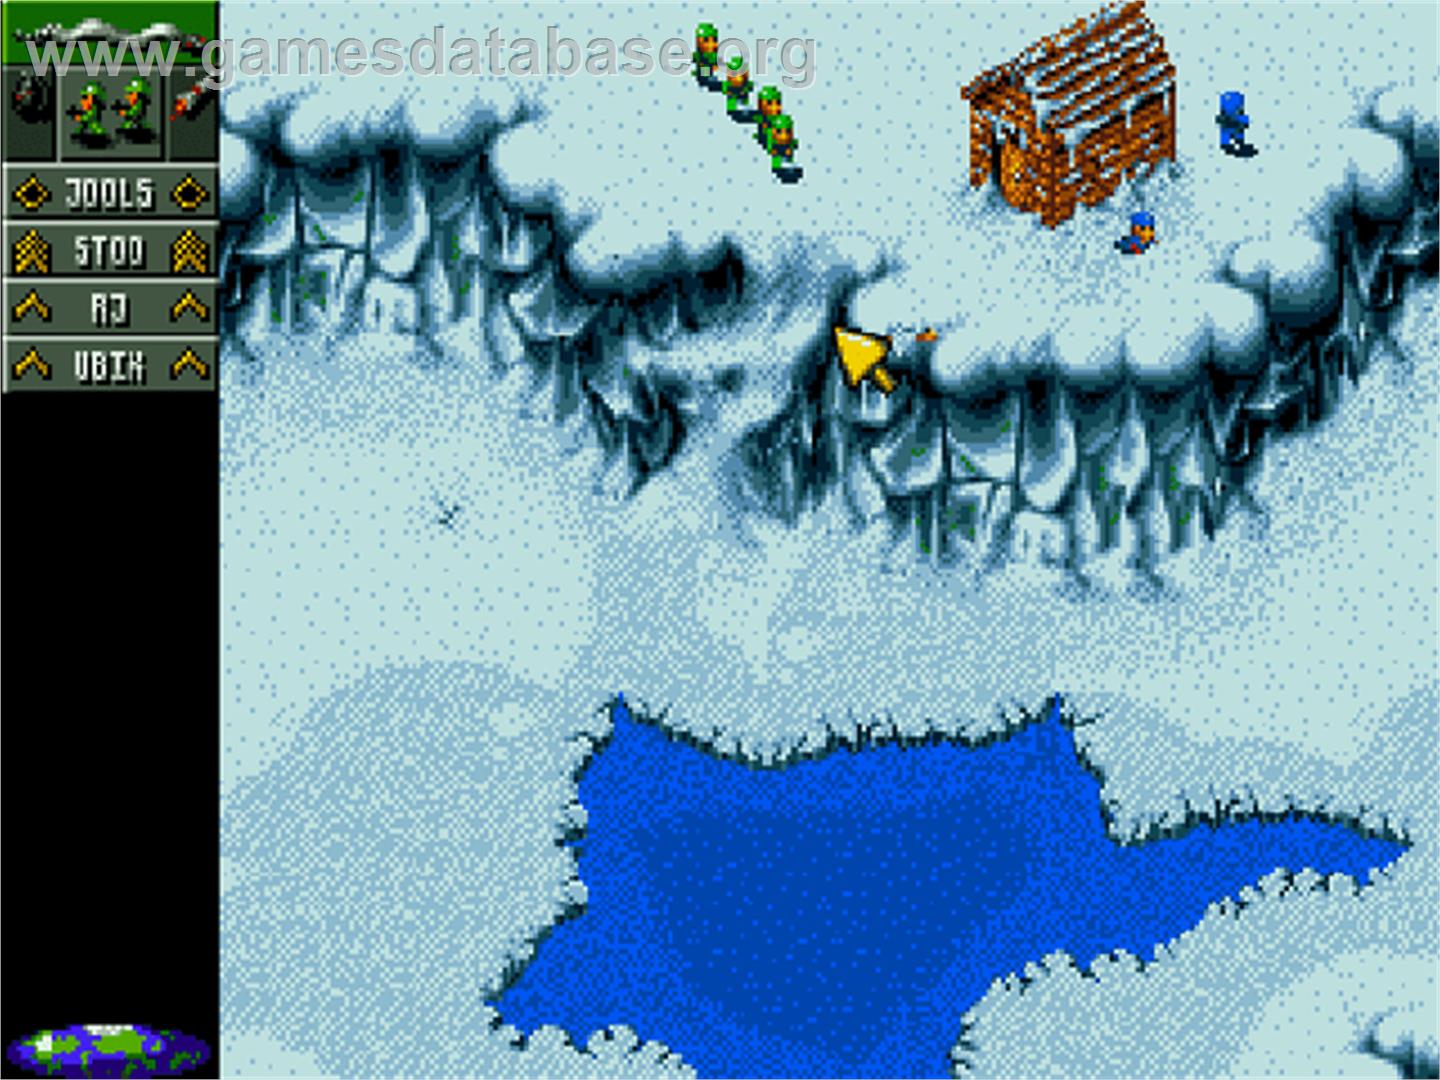 Cannon Fodder - Commodore Amiga CD32 - Artwork - In Game